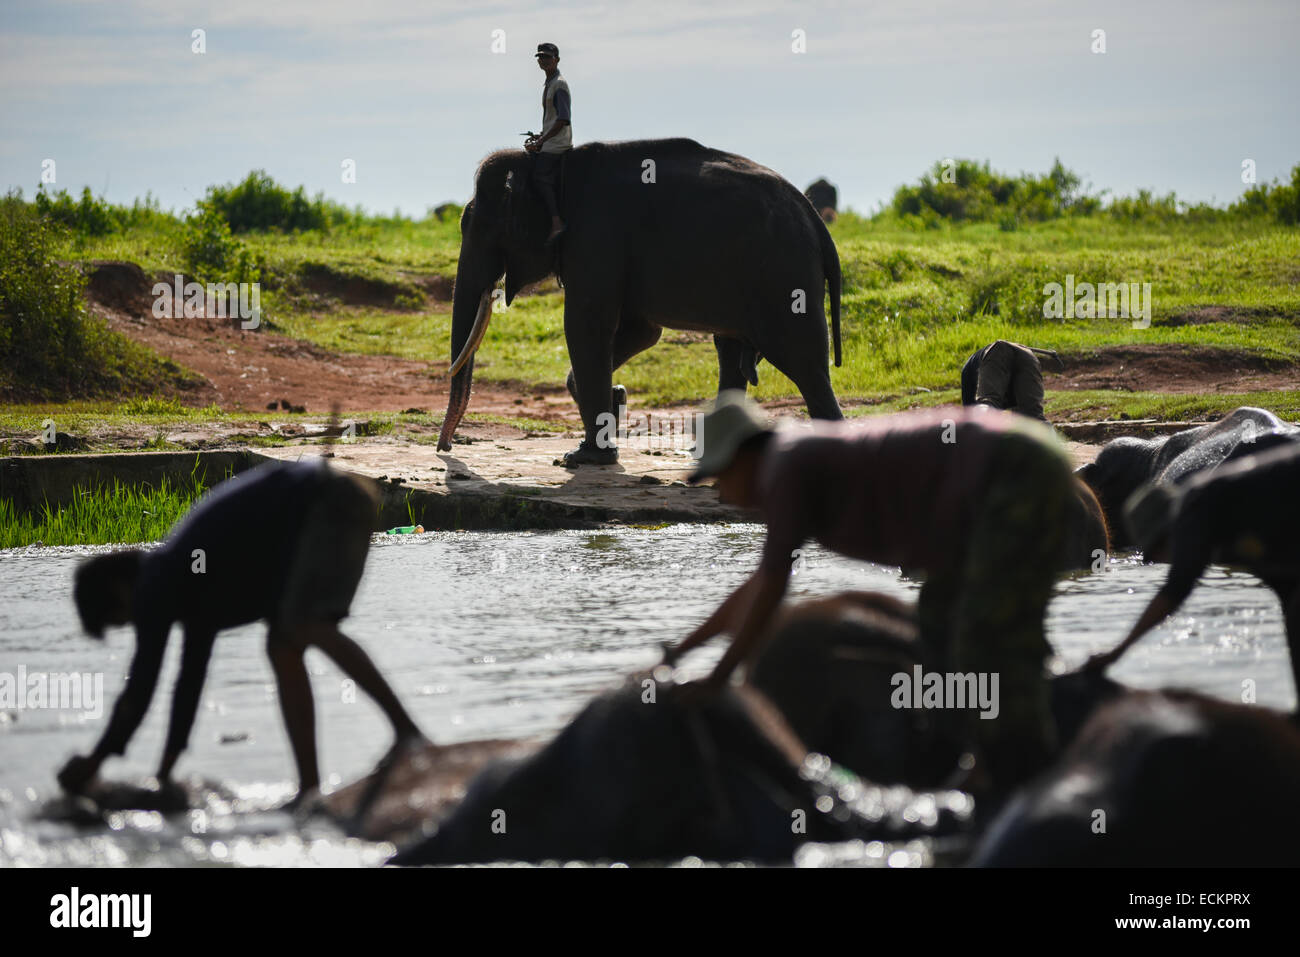 Les mahouts baignent les éléphants de Sumatran dans le parc national de Kambas, Sumatra, Indonésie. Banque D'Images